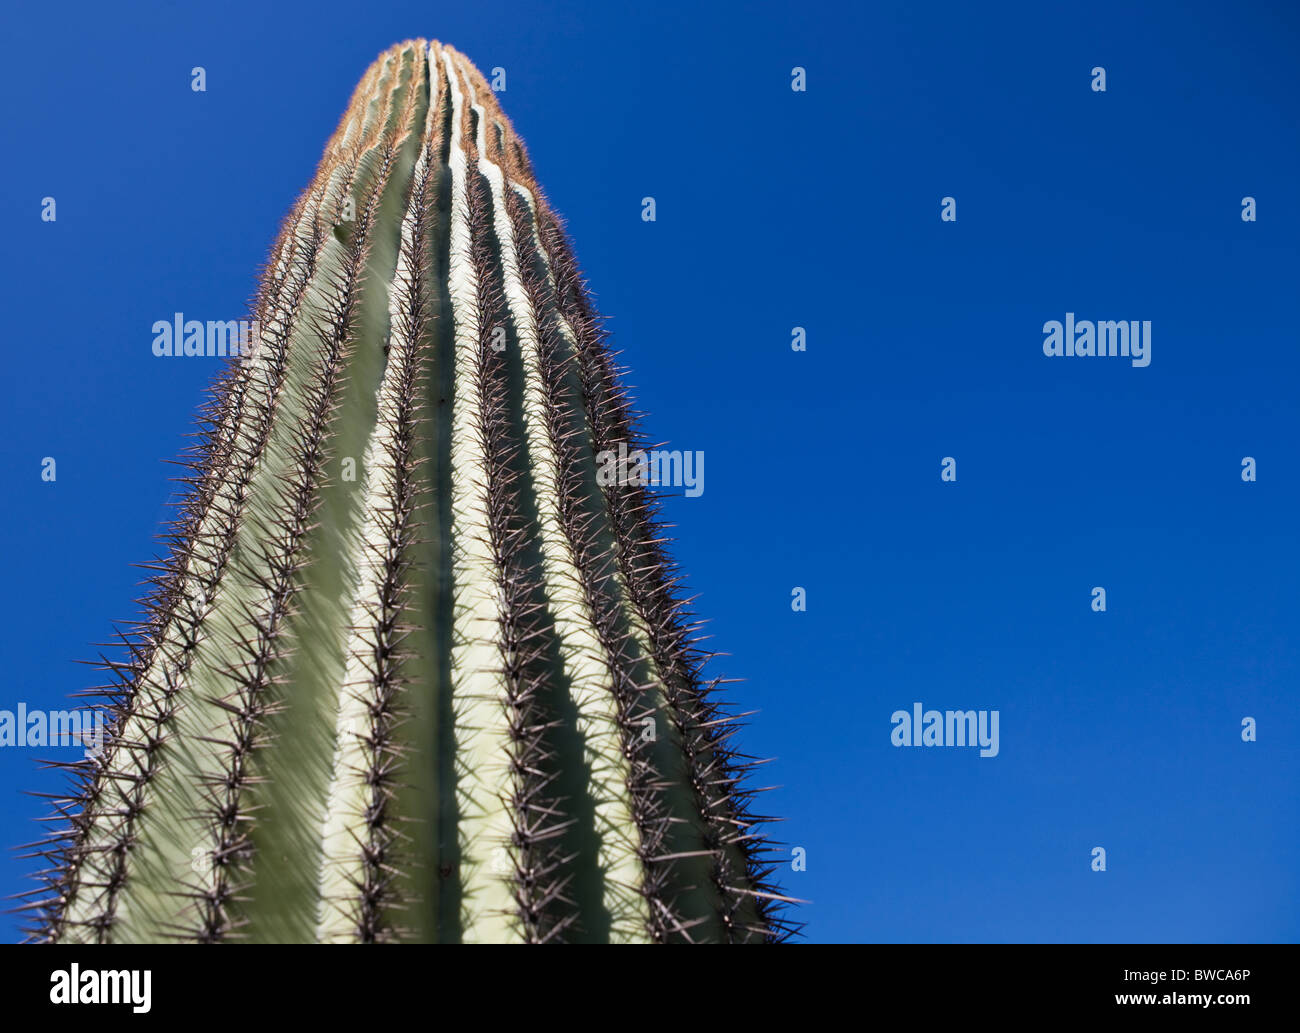 USA, Arizona, Phoenix, Cactus against blue sky Banque D'Images